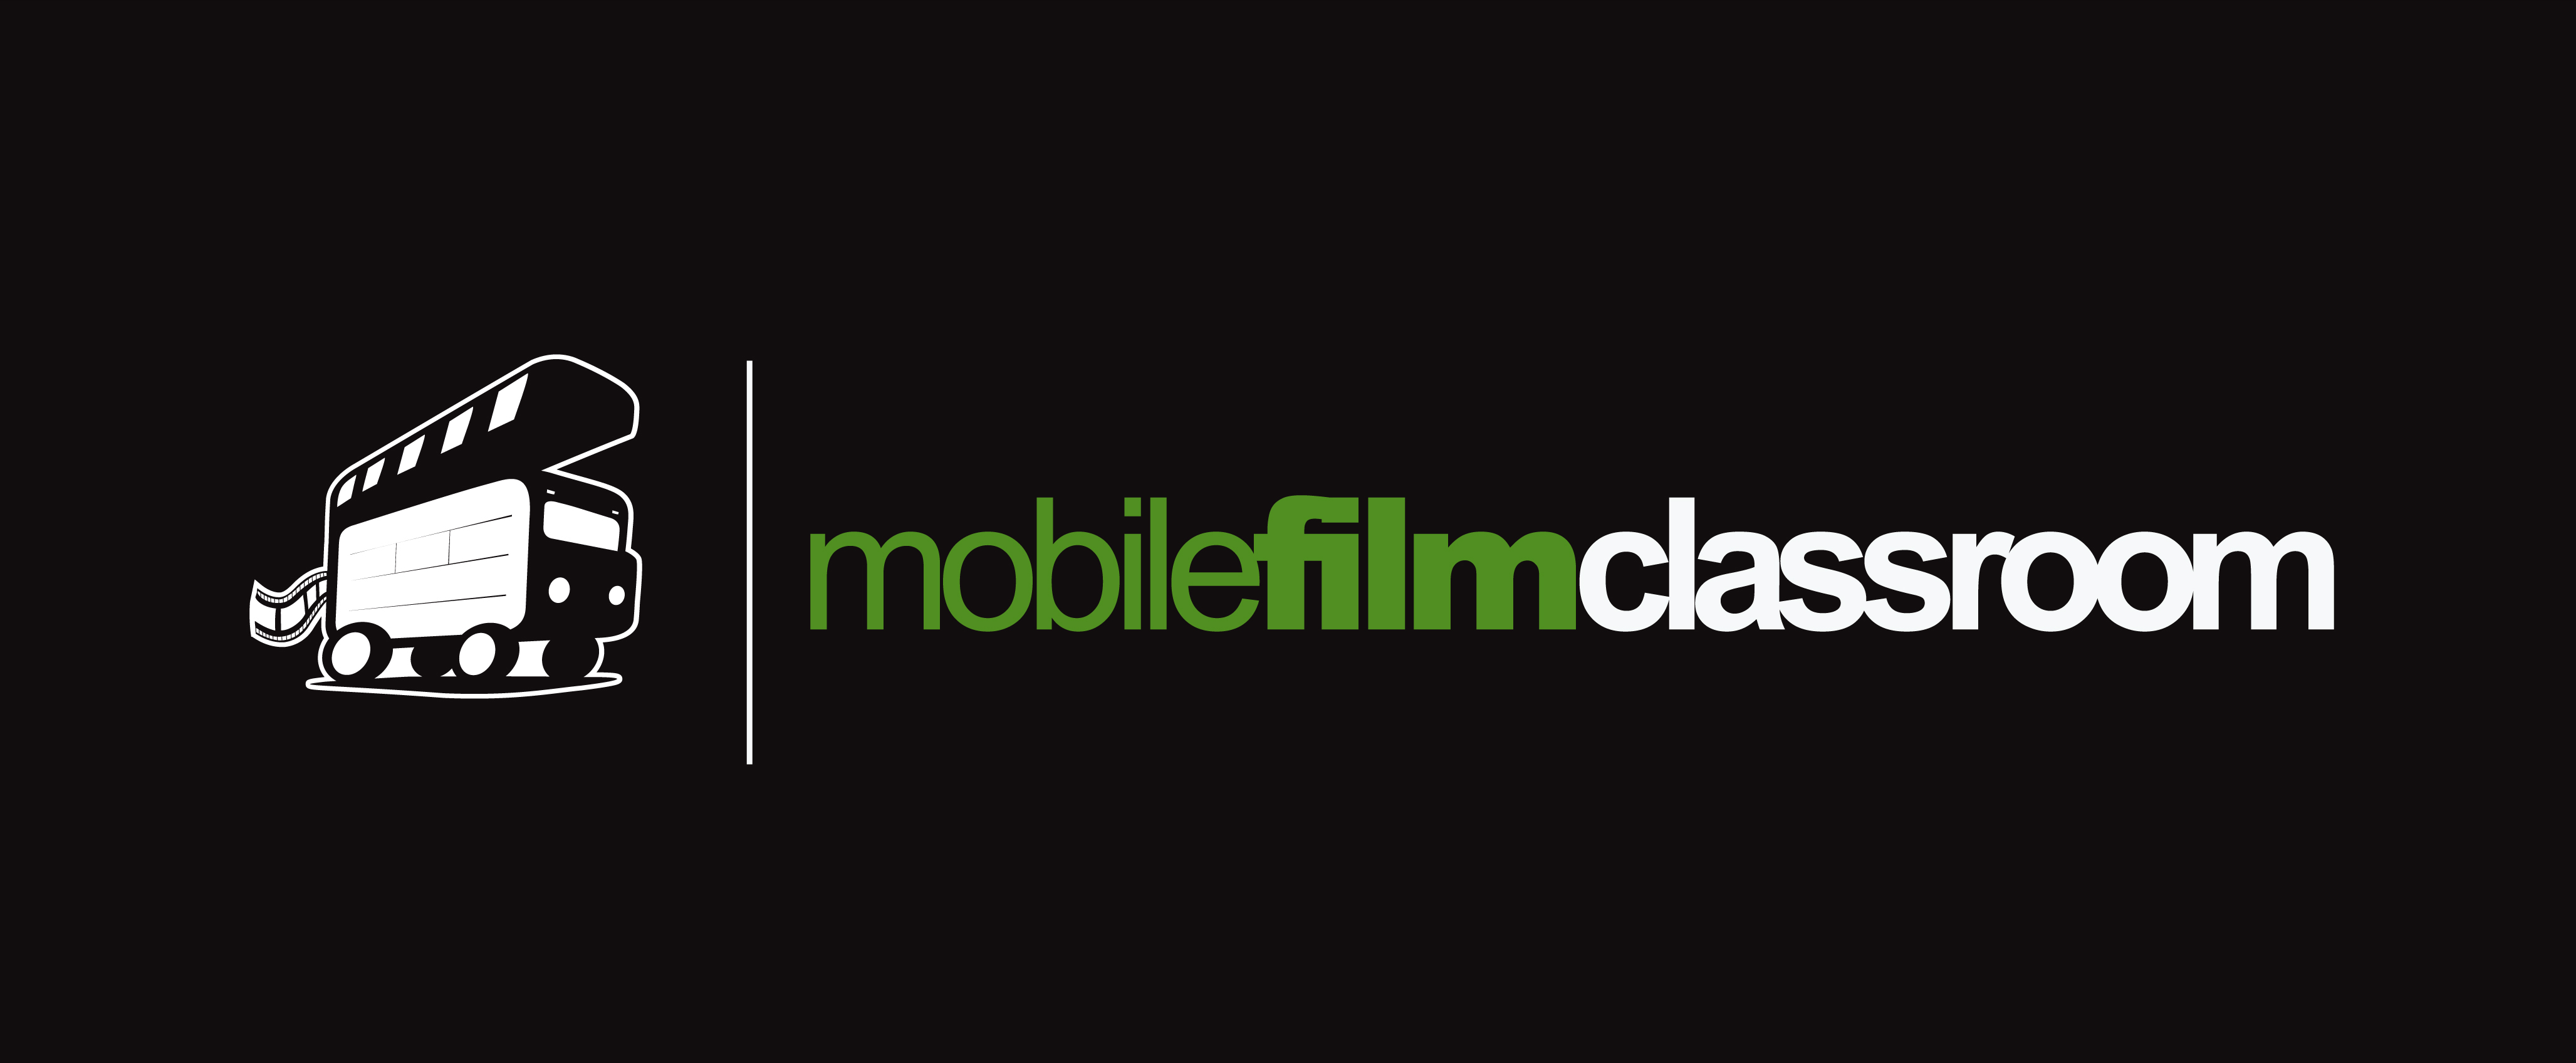 Mobile Film Classroom logo